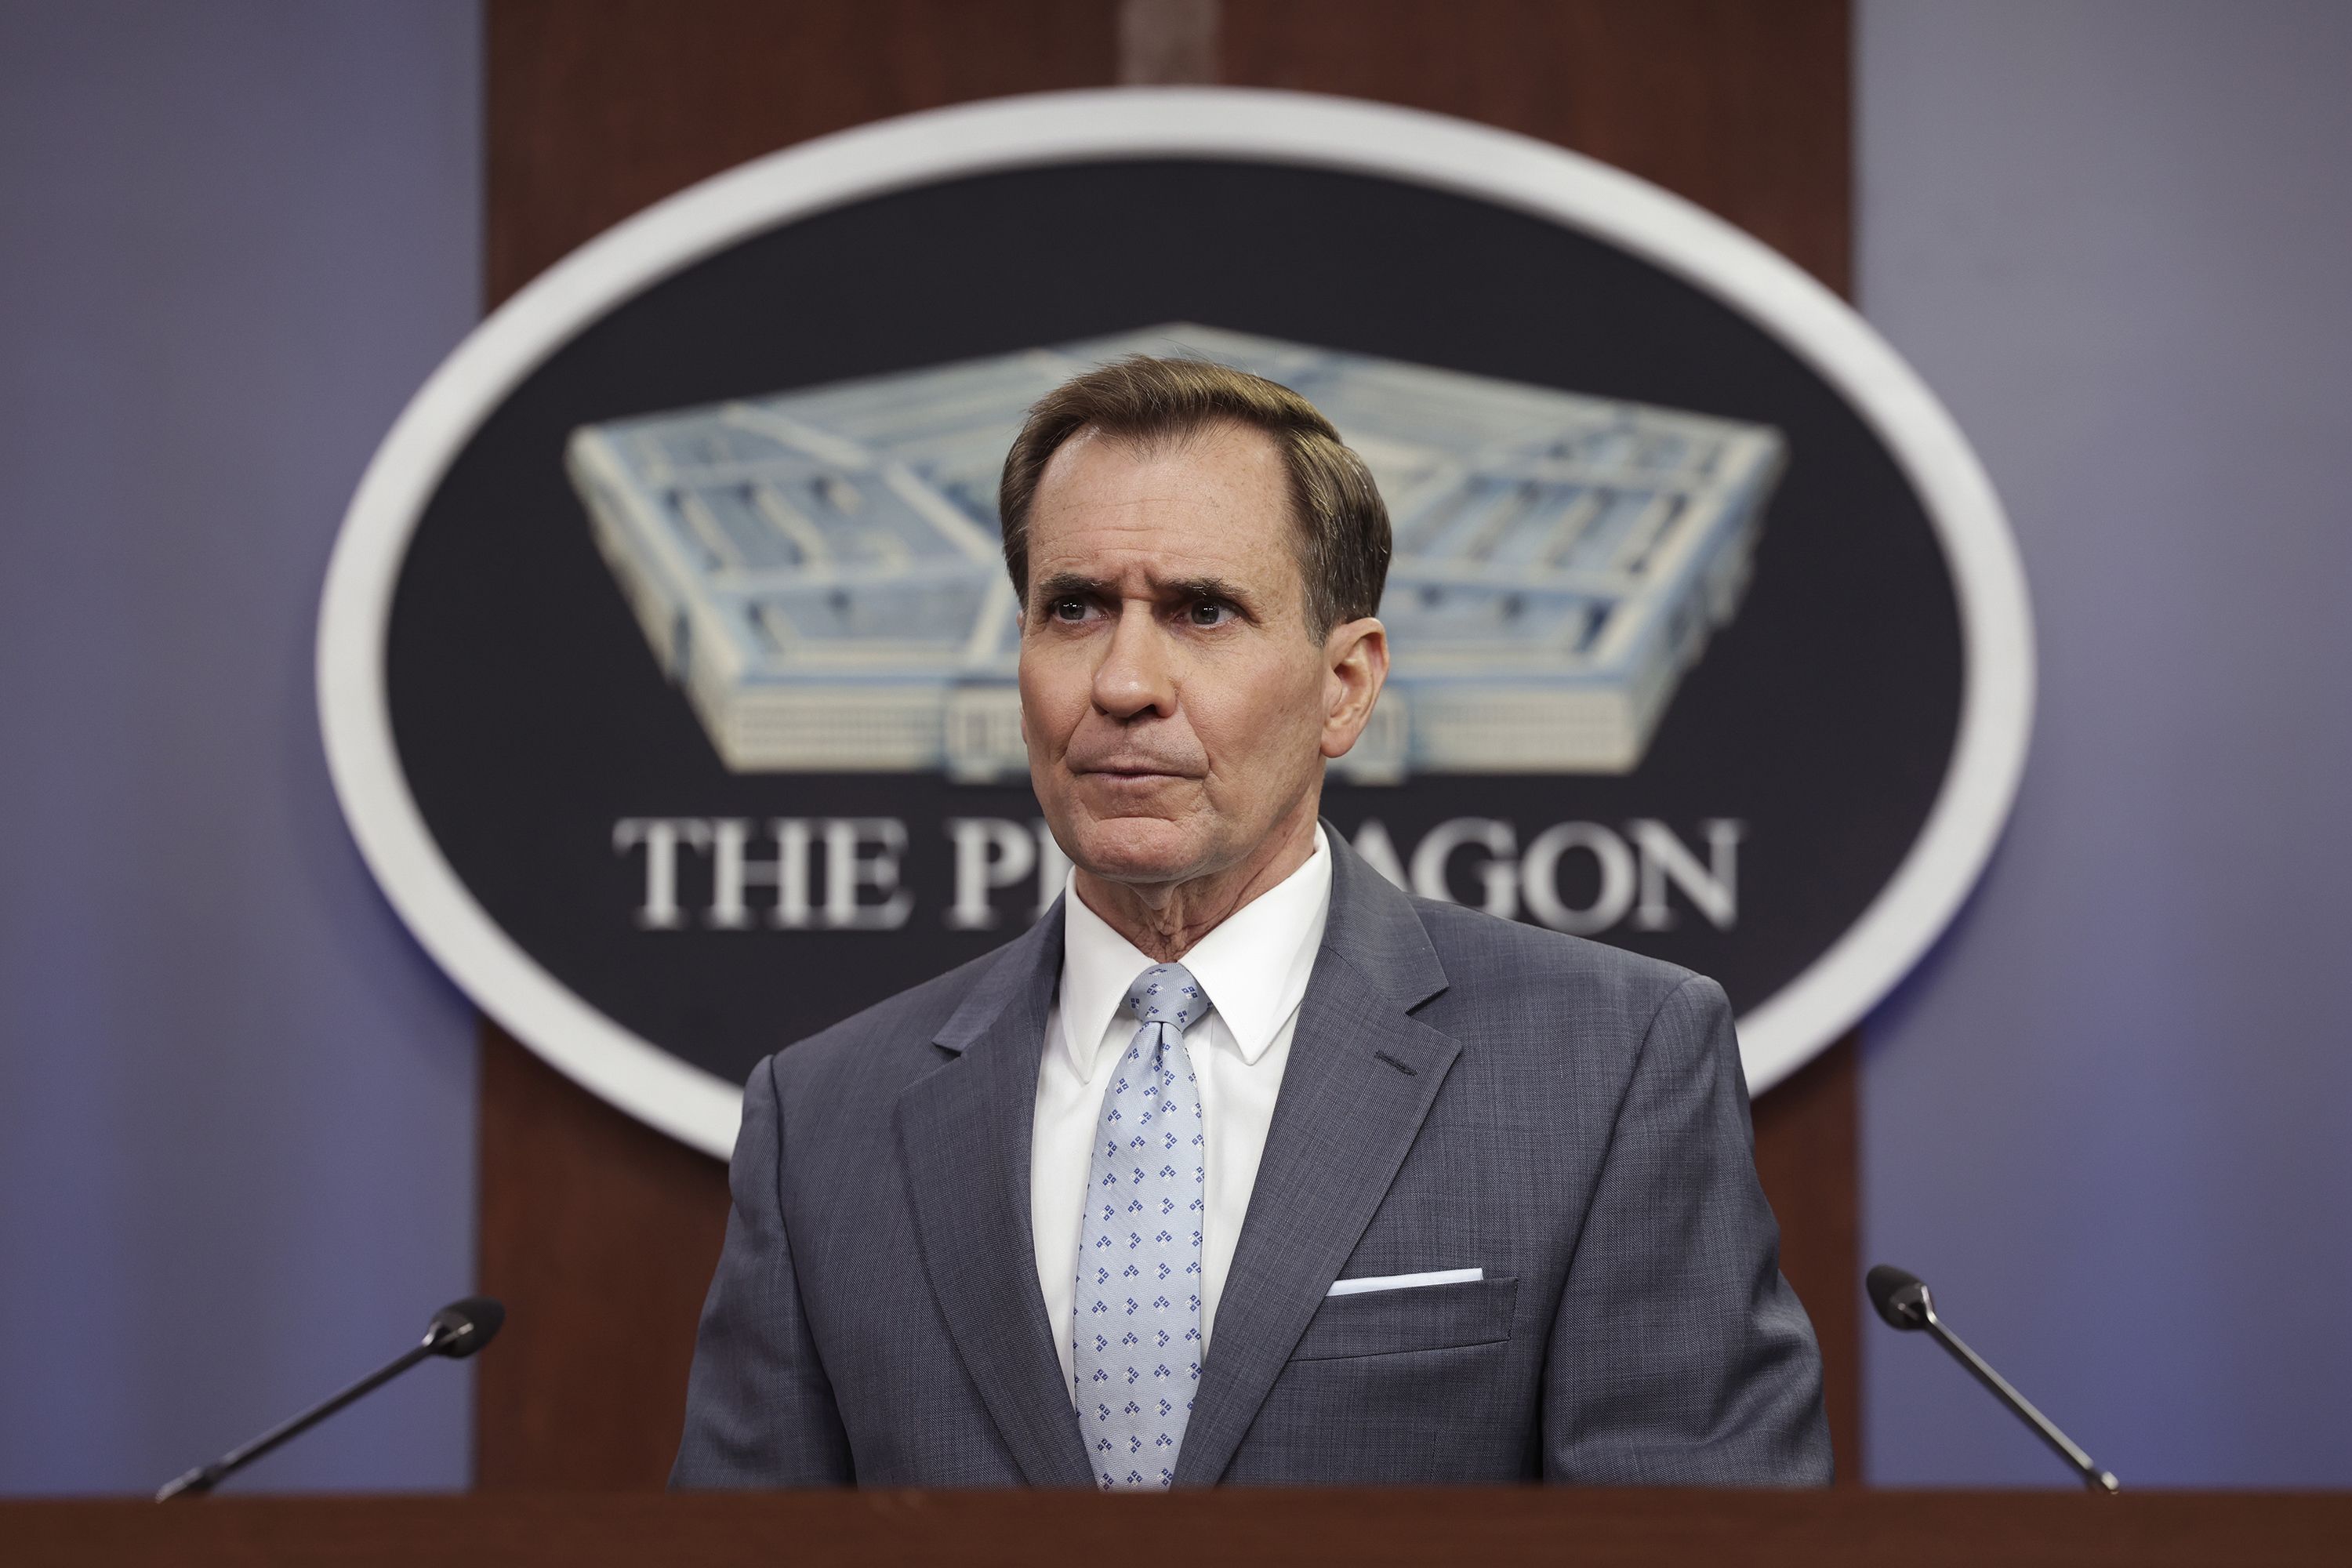 Pentagon spokesman John Kirby moving to the White House | CNN Politics